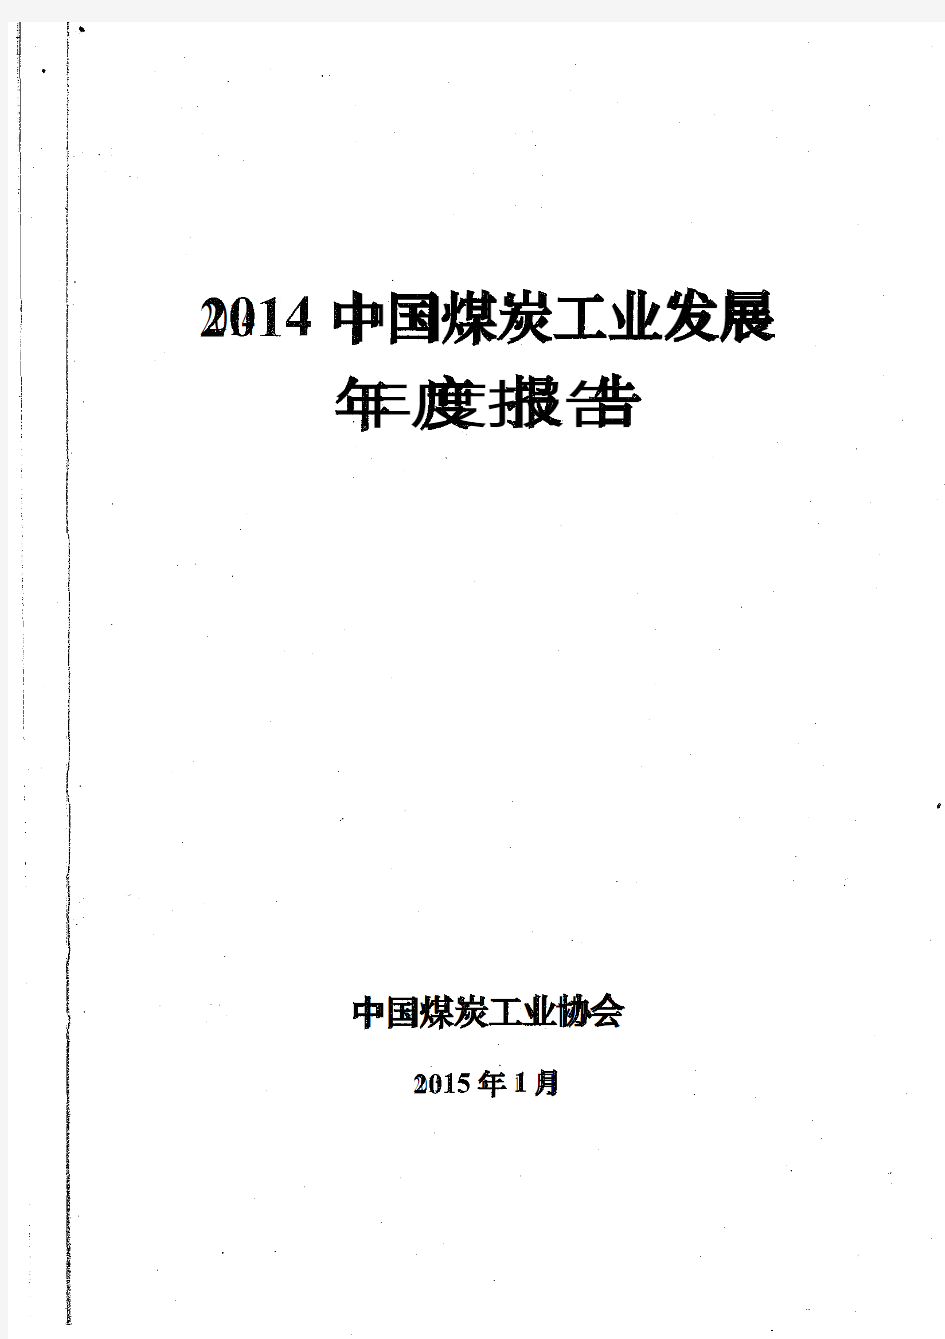 2014中国煤炭工业发展年度报告